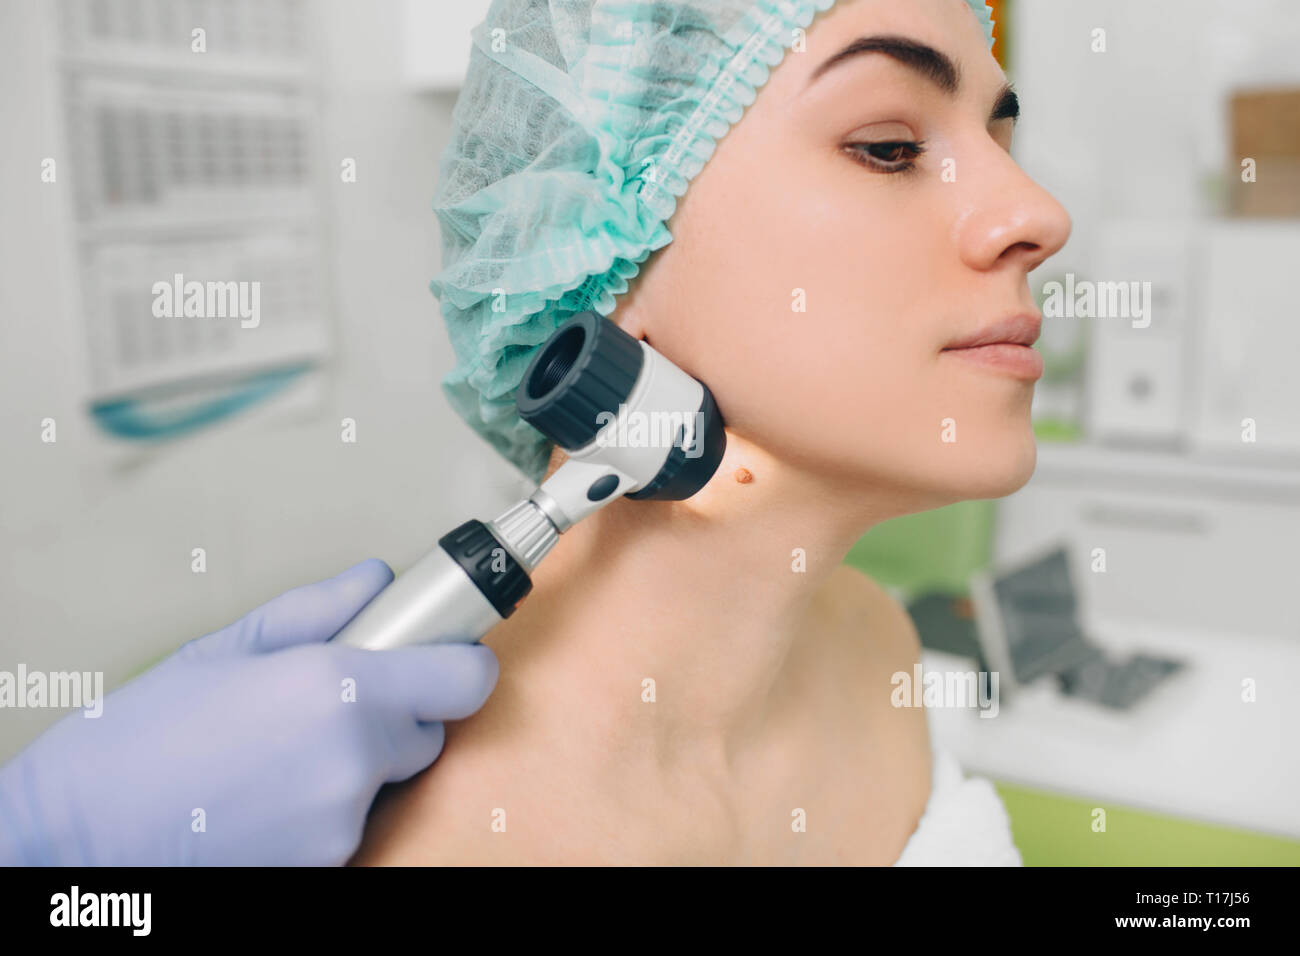 dermatologist exam skin mole on female neck using dermatoscope Stock Photo